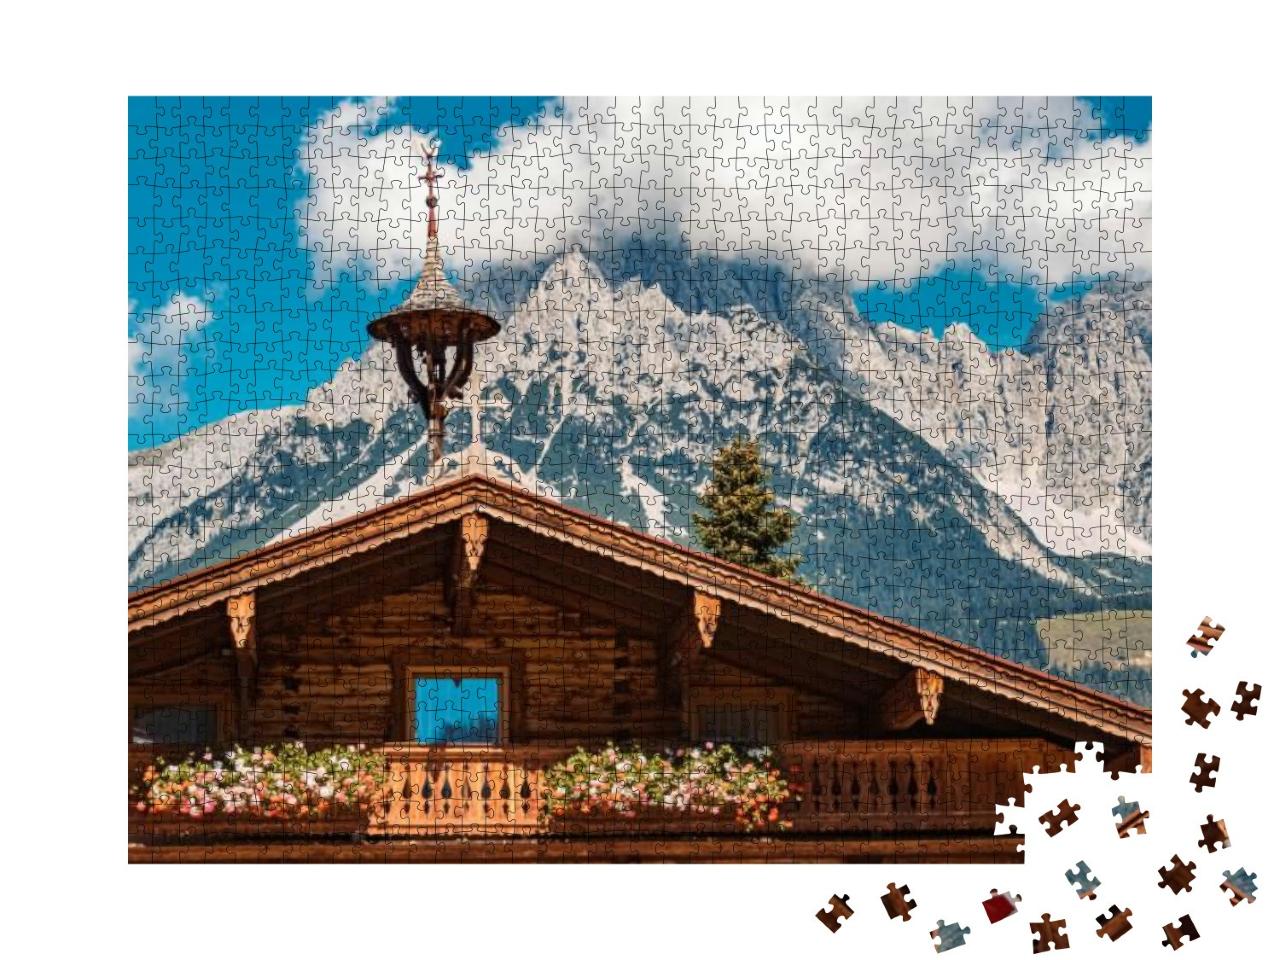 Puzzle 1000 Teile „Ellmau am Wilden Kaiser, Tirol, Österreich“